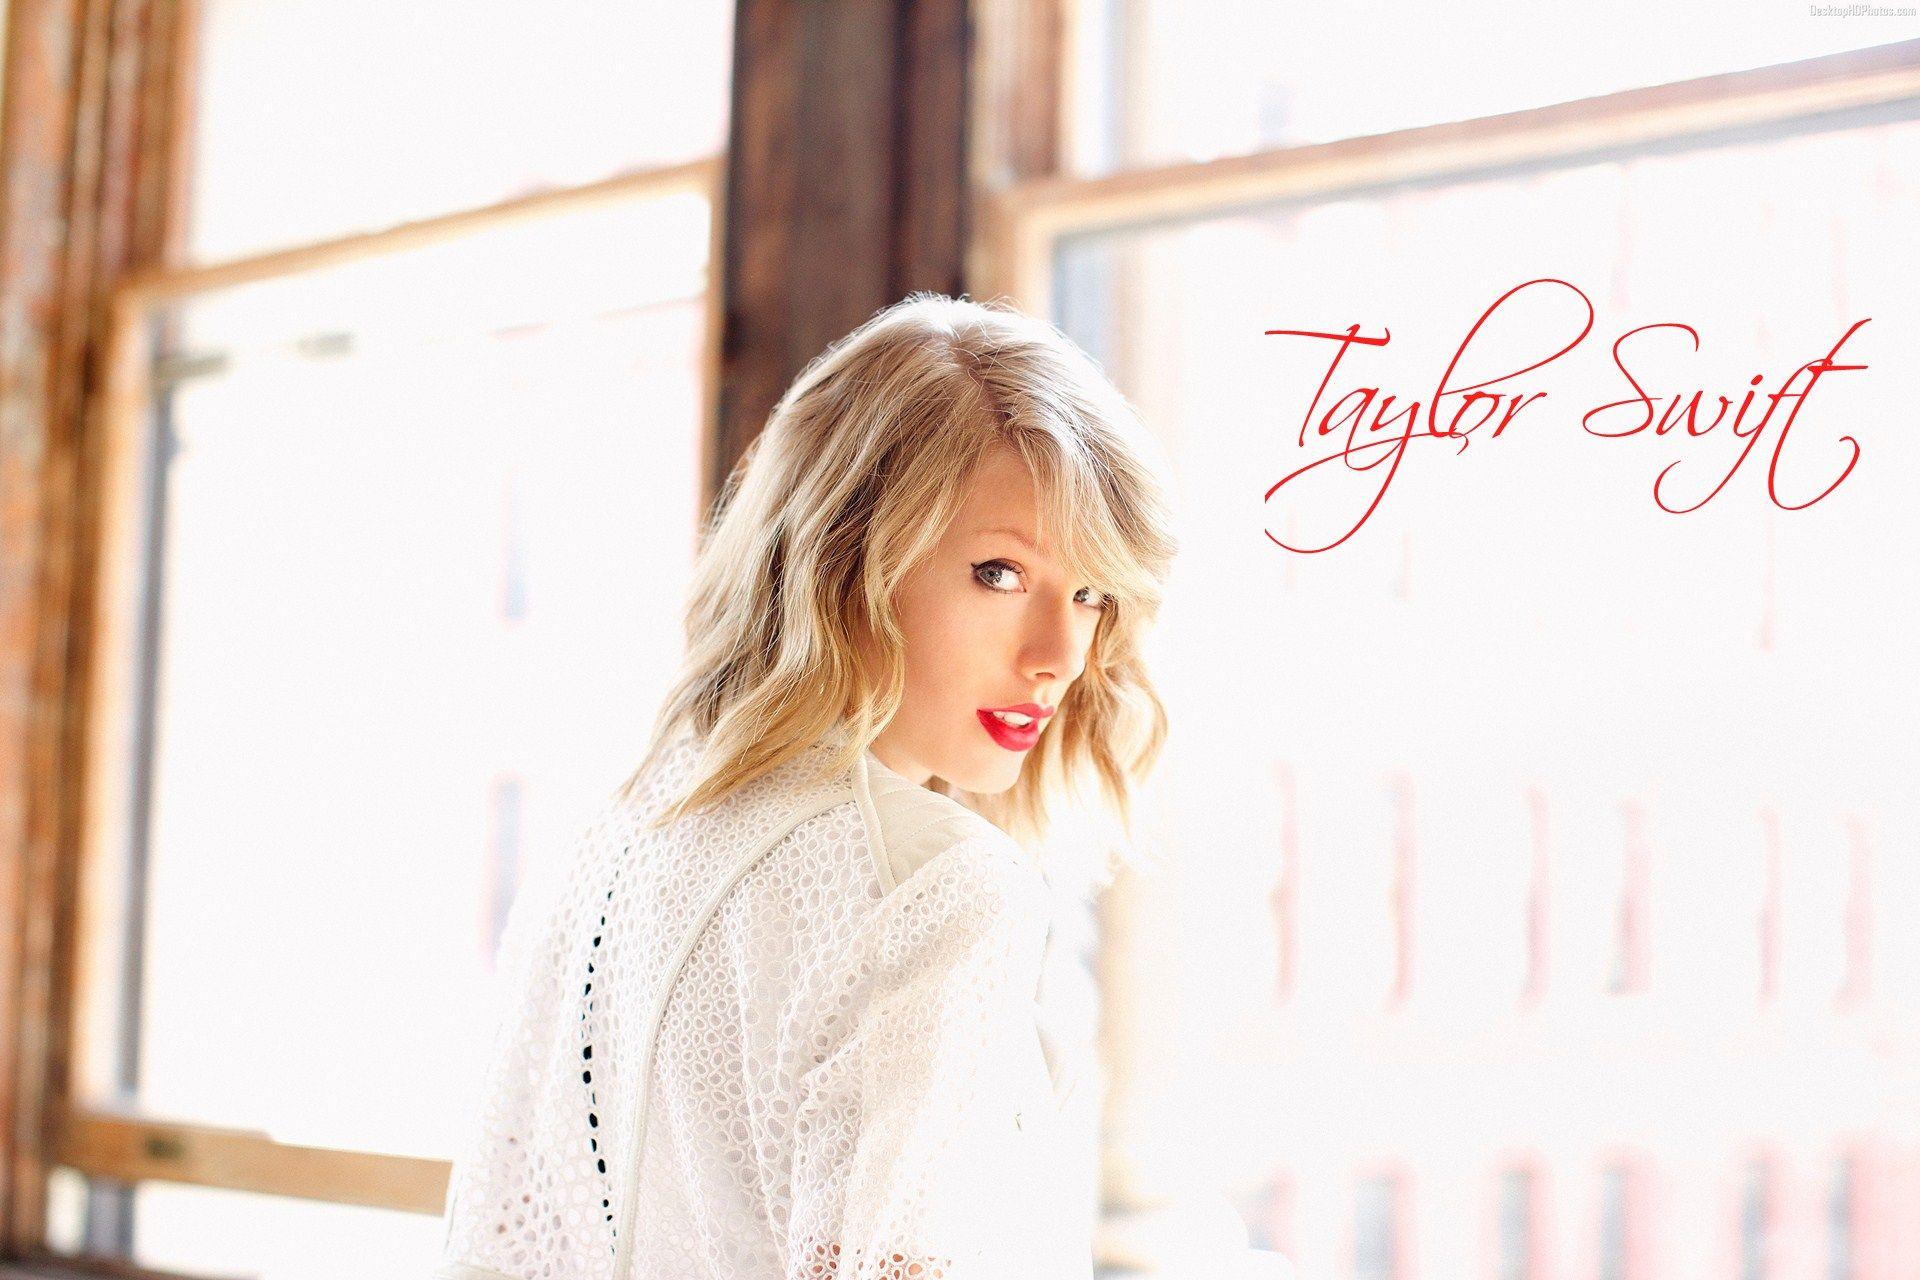 Taylor Swift Photohoot